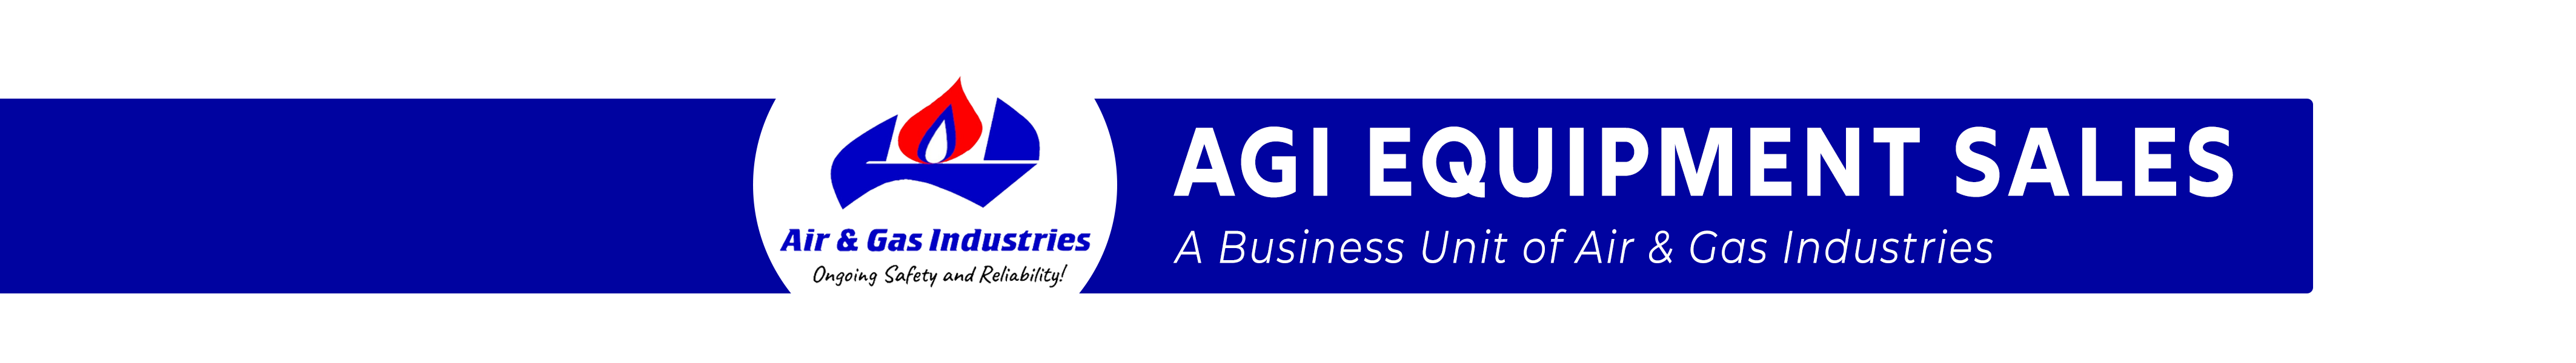 AGI Equipment Sales